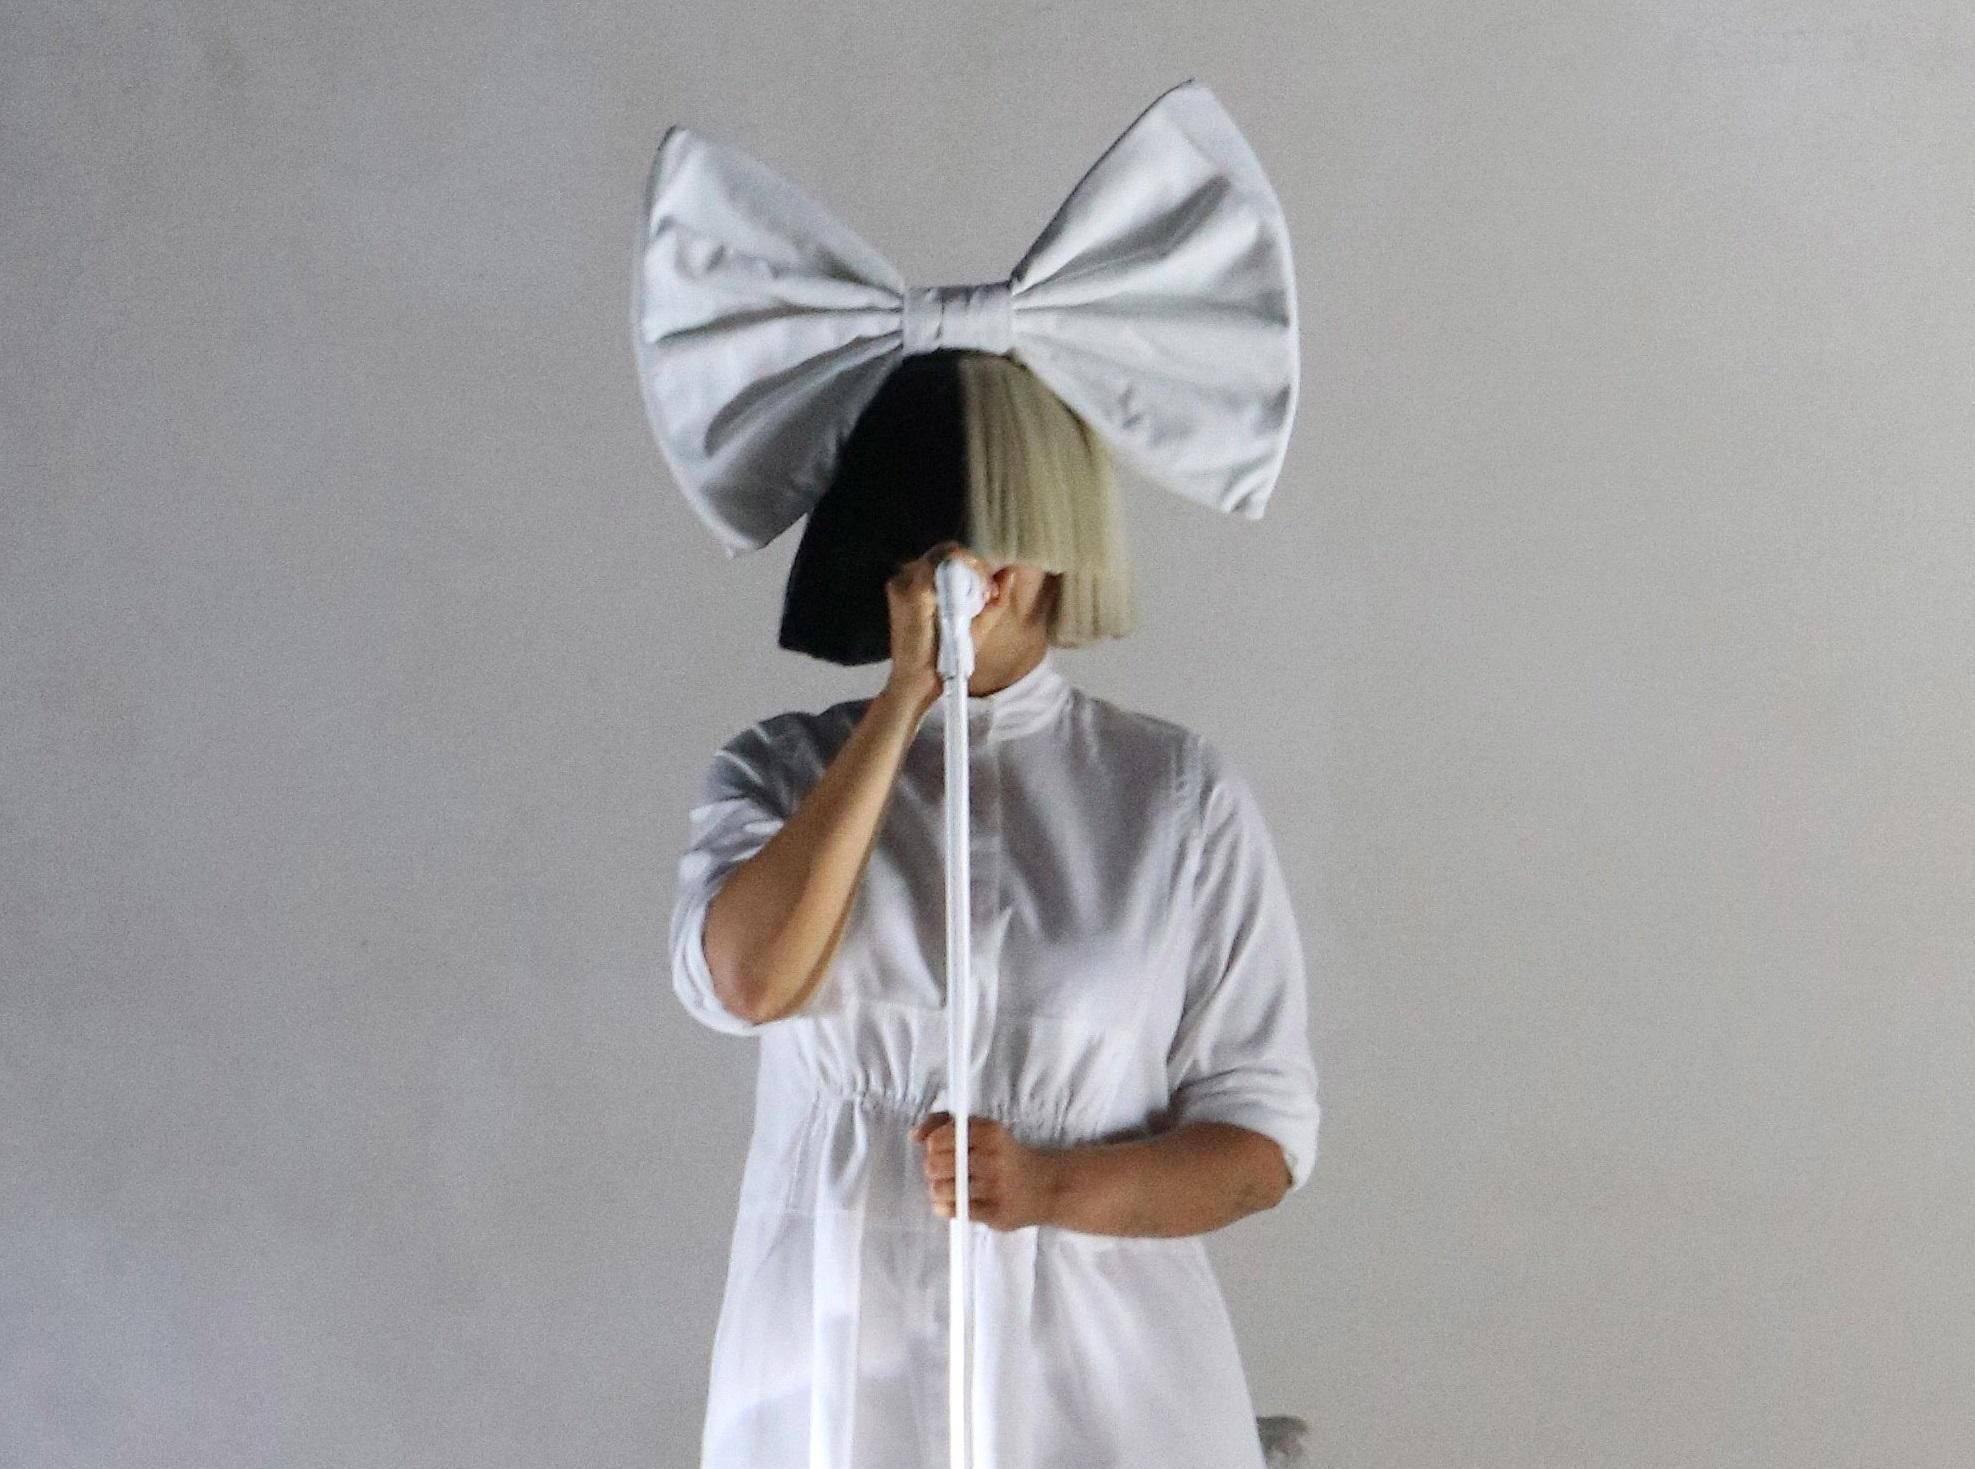 Певица Sia страдает от неврологического расстройства: подробности